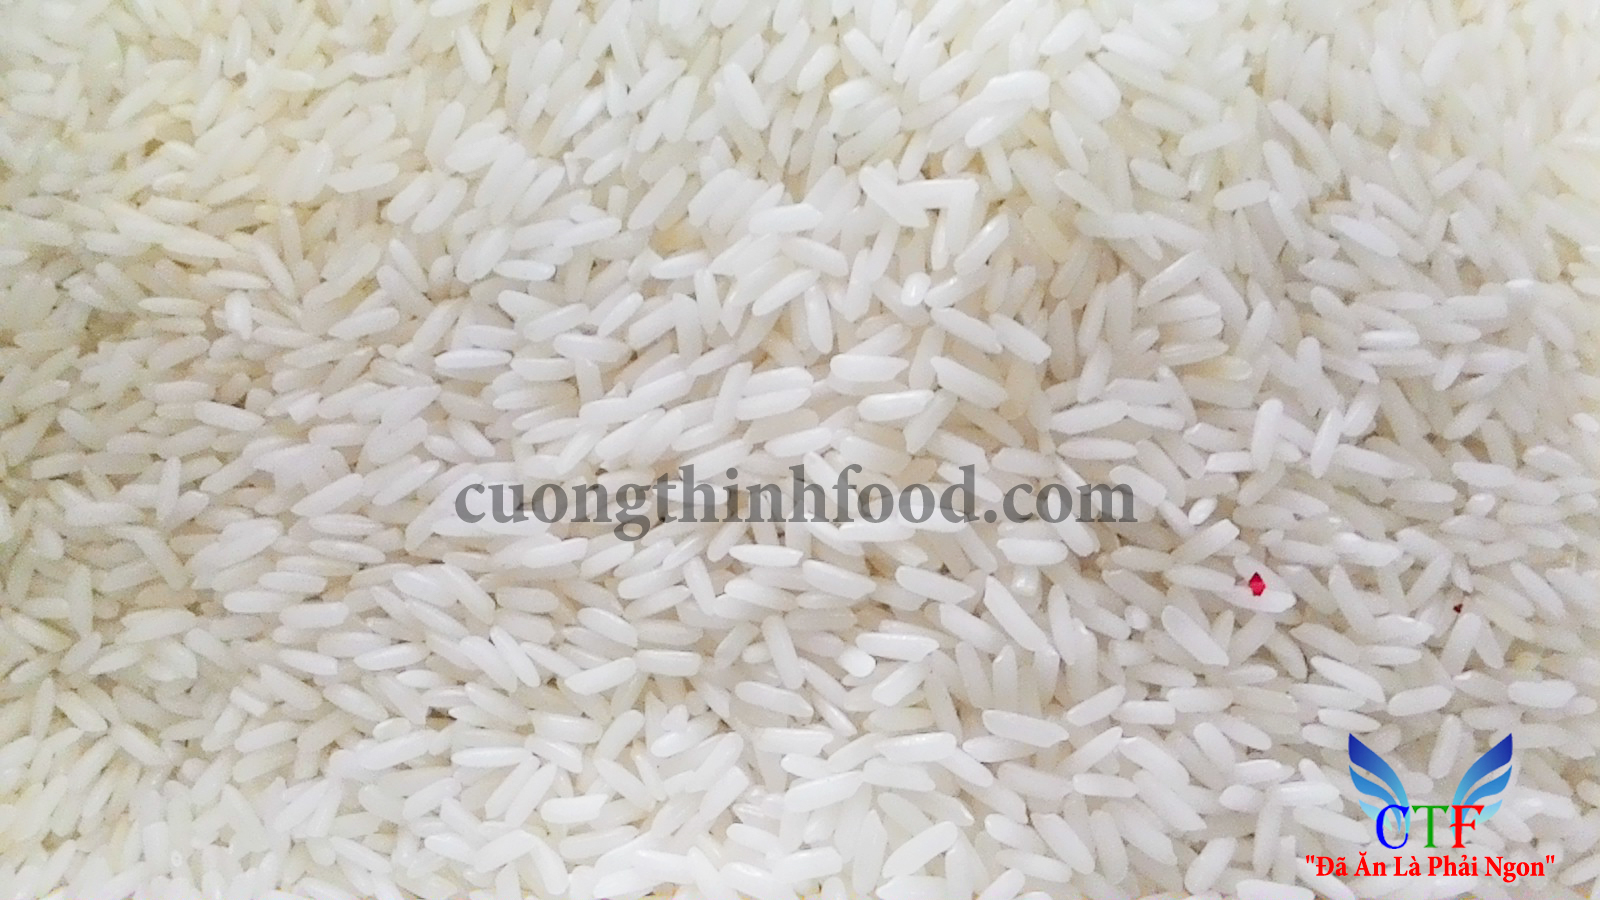 Gạo Hương Lài Sữa có màu sắc và hình dáng đồng nhất